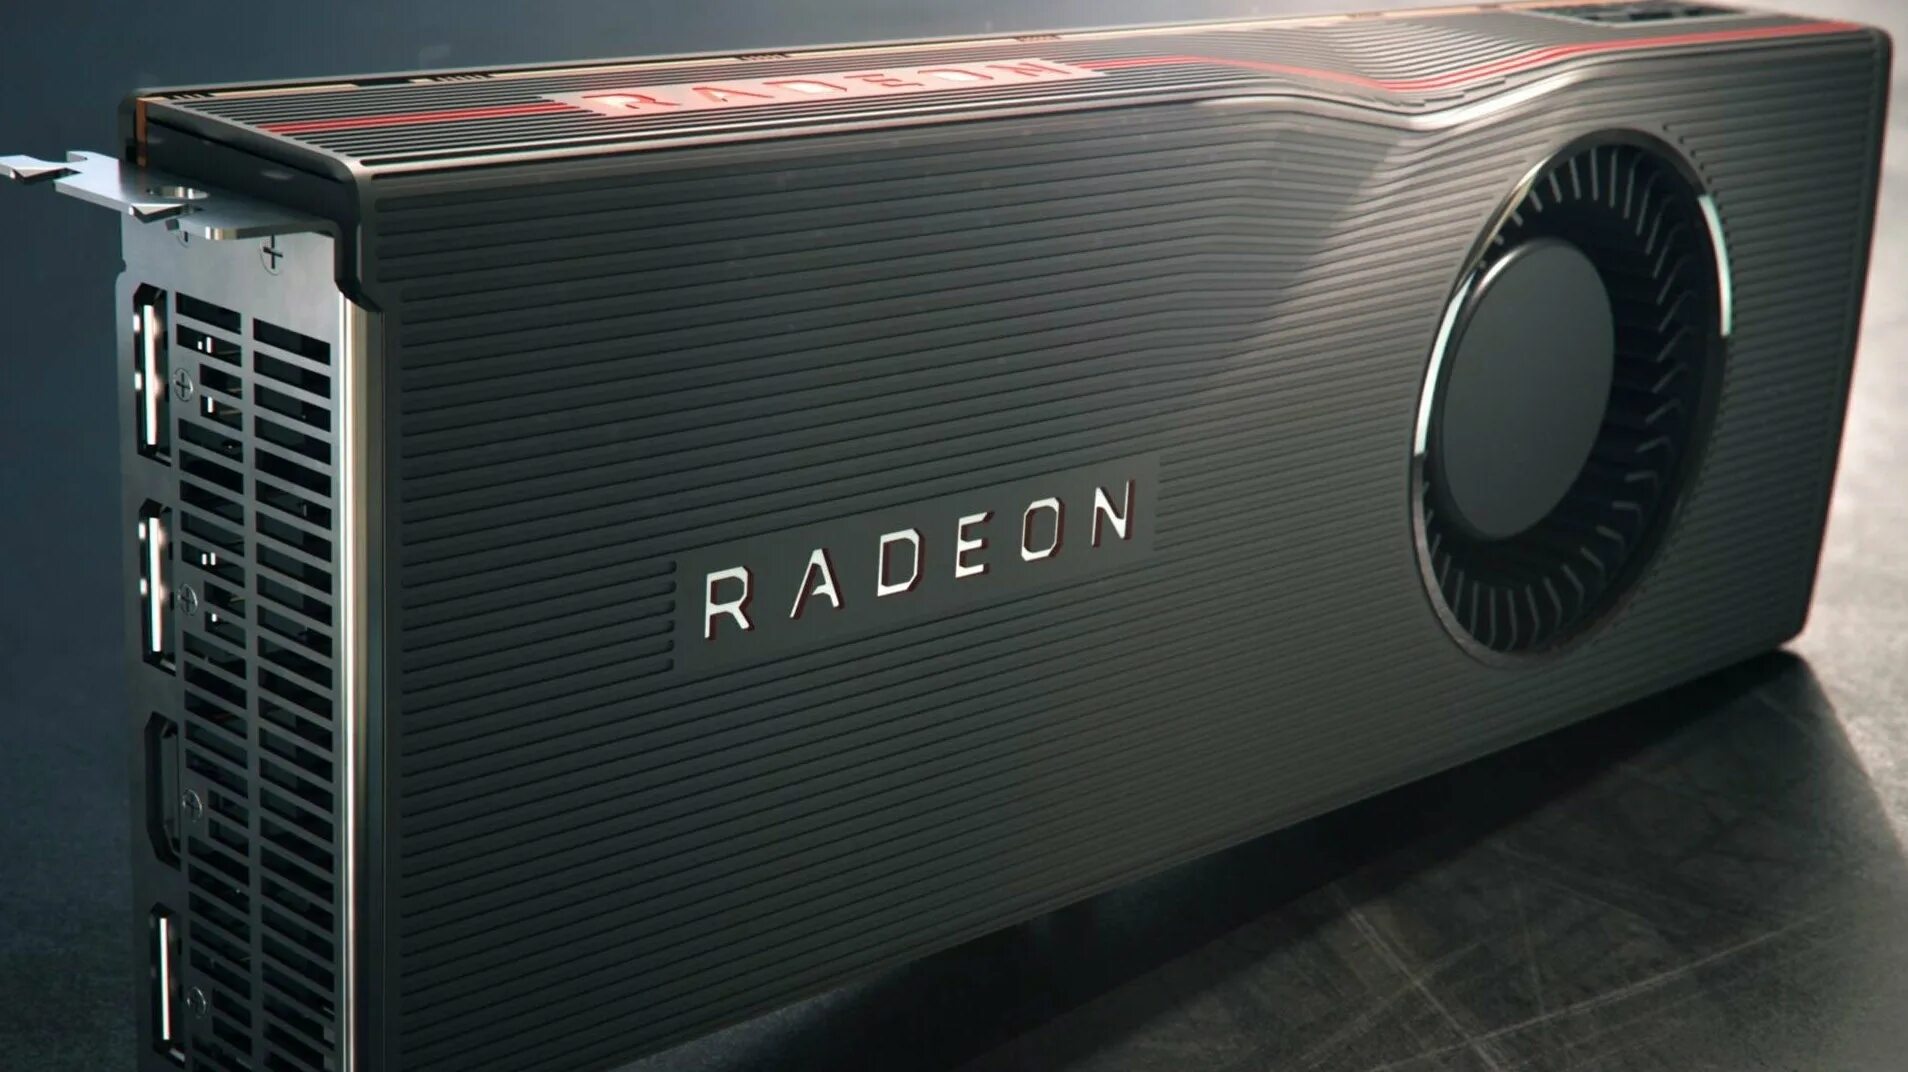 Radeon RX 5700. RX 5700 XT. AMD Radeon 5700 XT. AMD Radeon RX 5700 XT Nitro+.